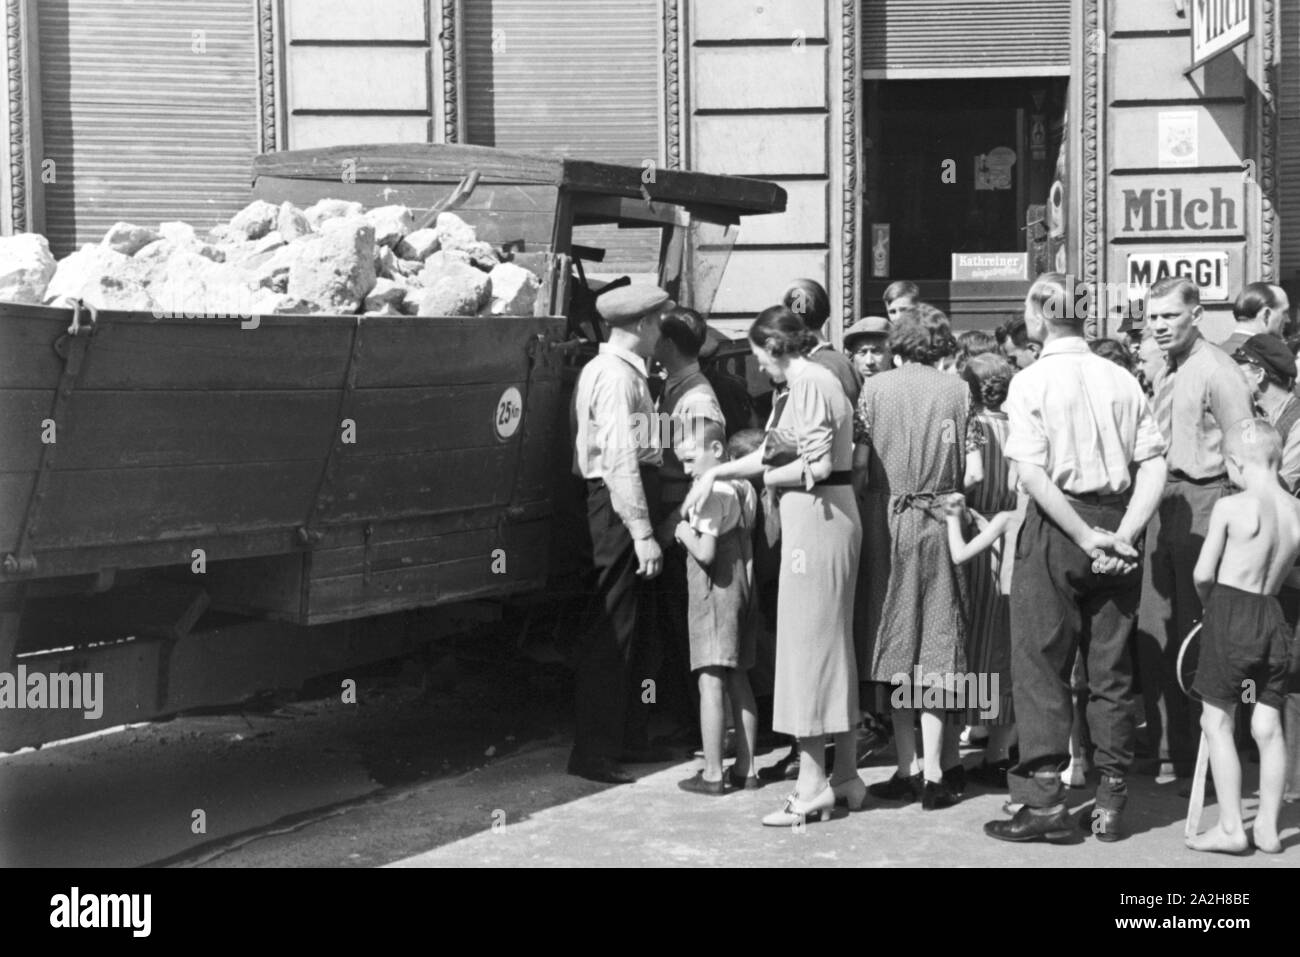 Schaulustige sammeln sich um einen Verkehrsunfall, Deutschland 1930er Jahre. Curious onlookers gathering at a traffic accident, Germany 1930s. Stock Photo